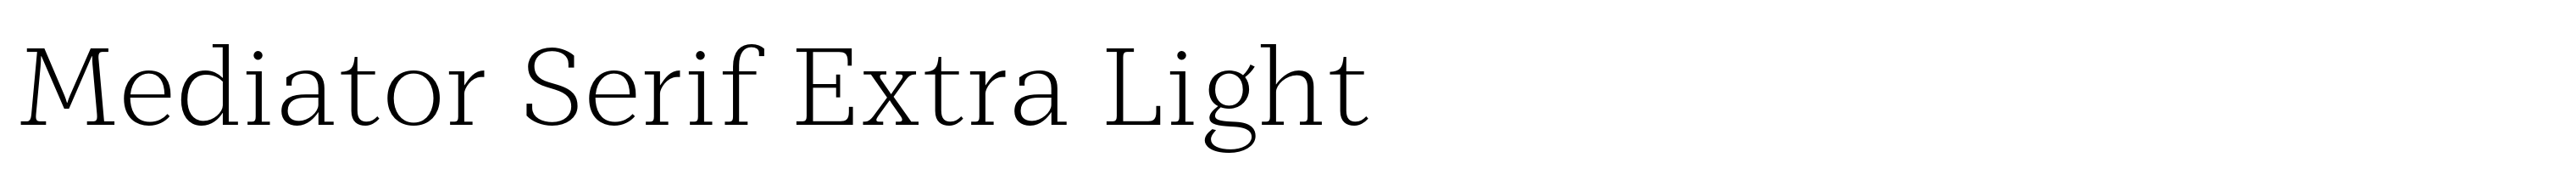 Mediator Serif Extra Light